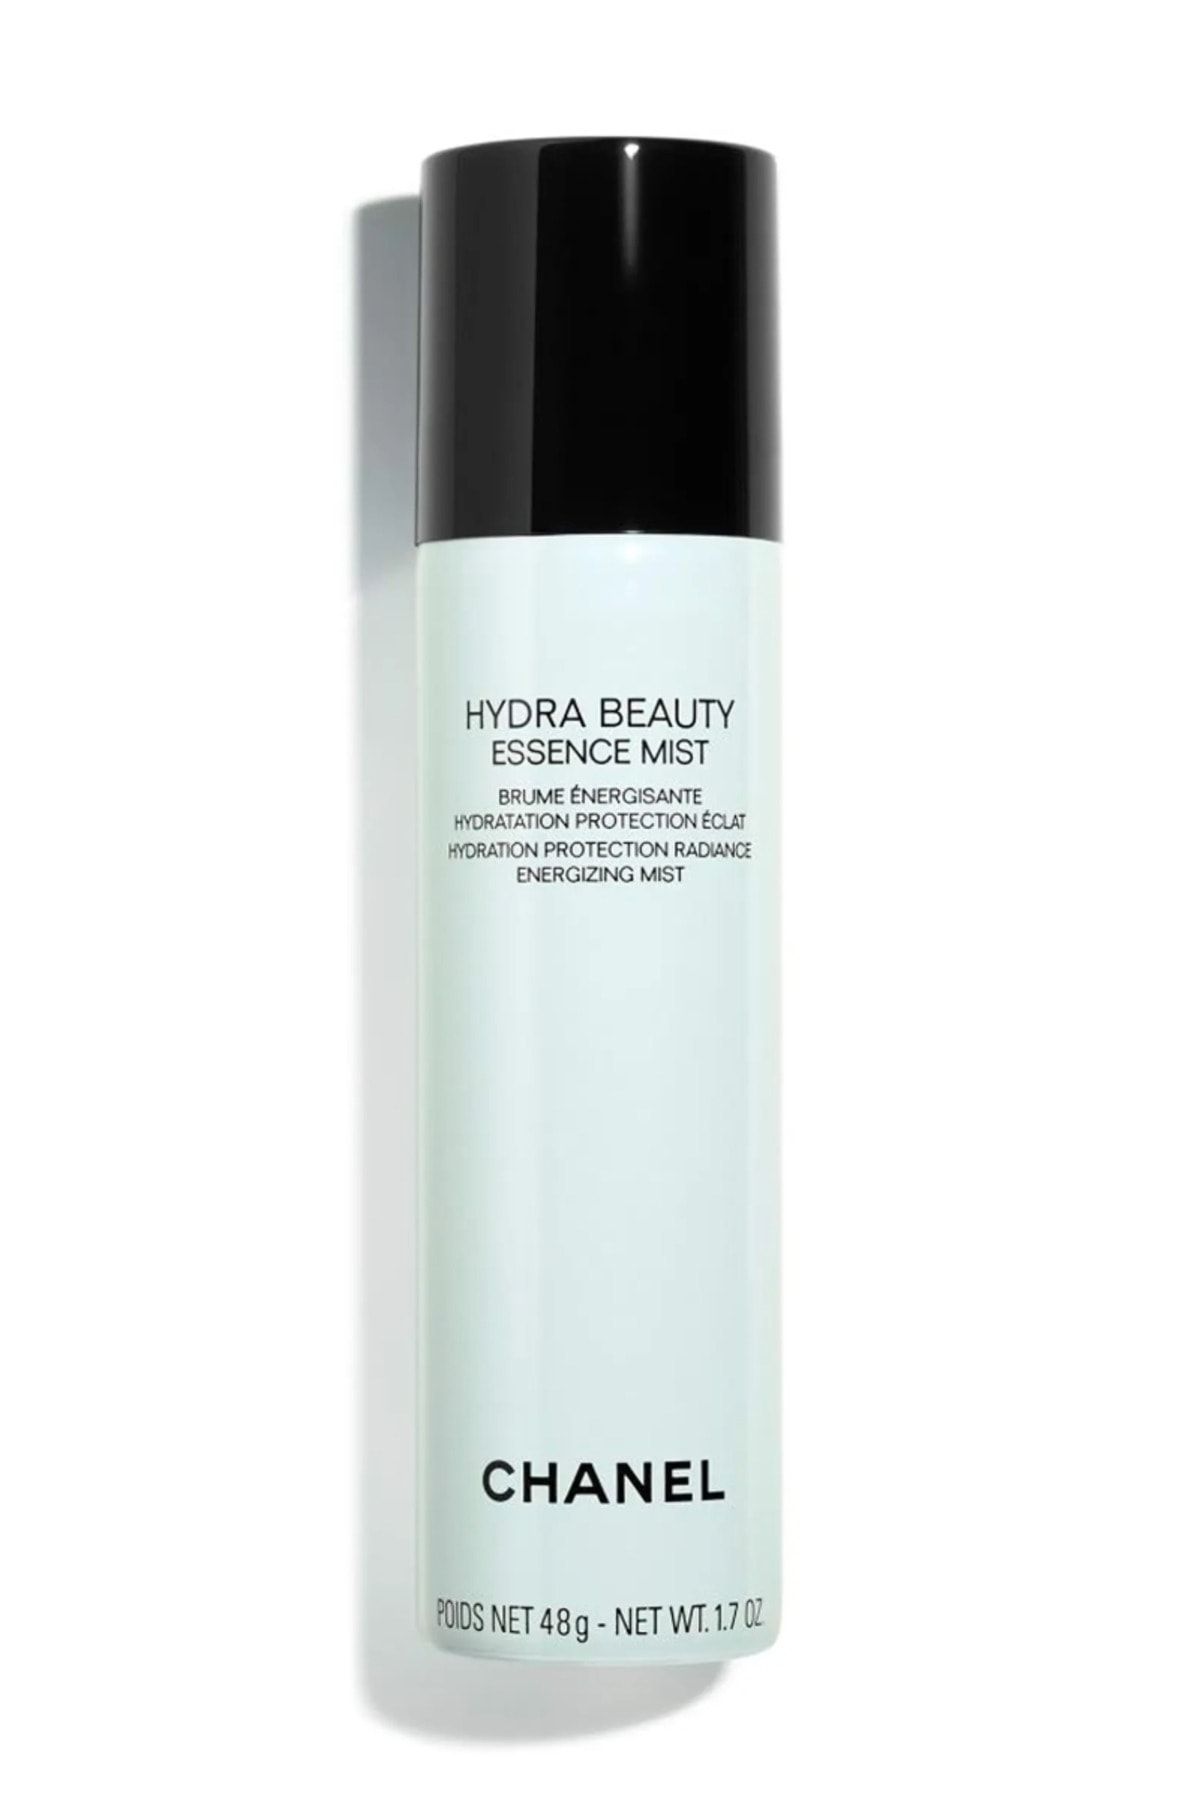 Chanel اسانس میست انرژی رسان و محافظت کننده Hydra Beauty آبرسانی، درخشندگی و احیا کننده پوست 50 میل